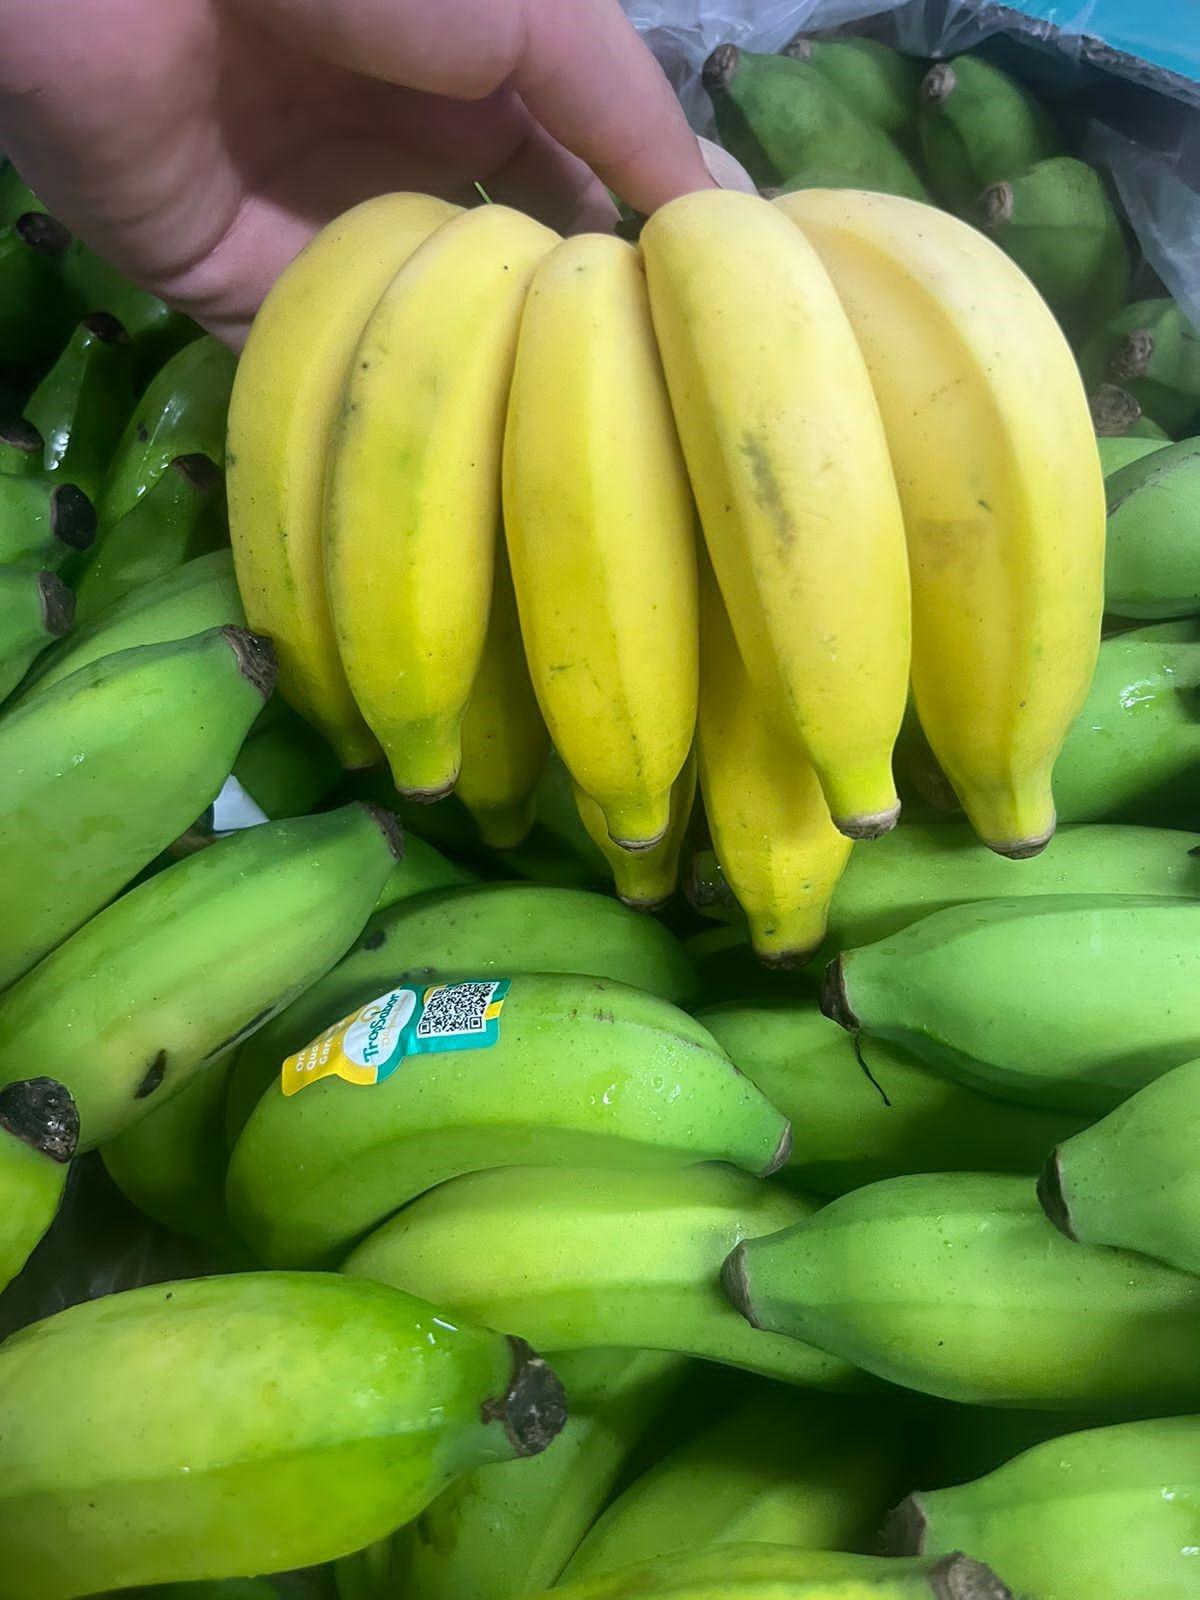 Ceasa-Campinas comercializa a variedade da banana-princesa, fruta desconhecida por muita gente